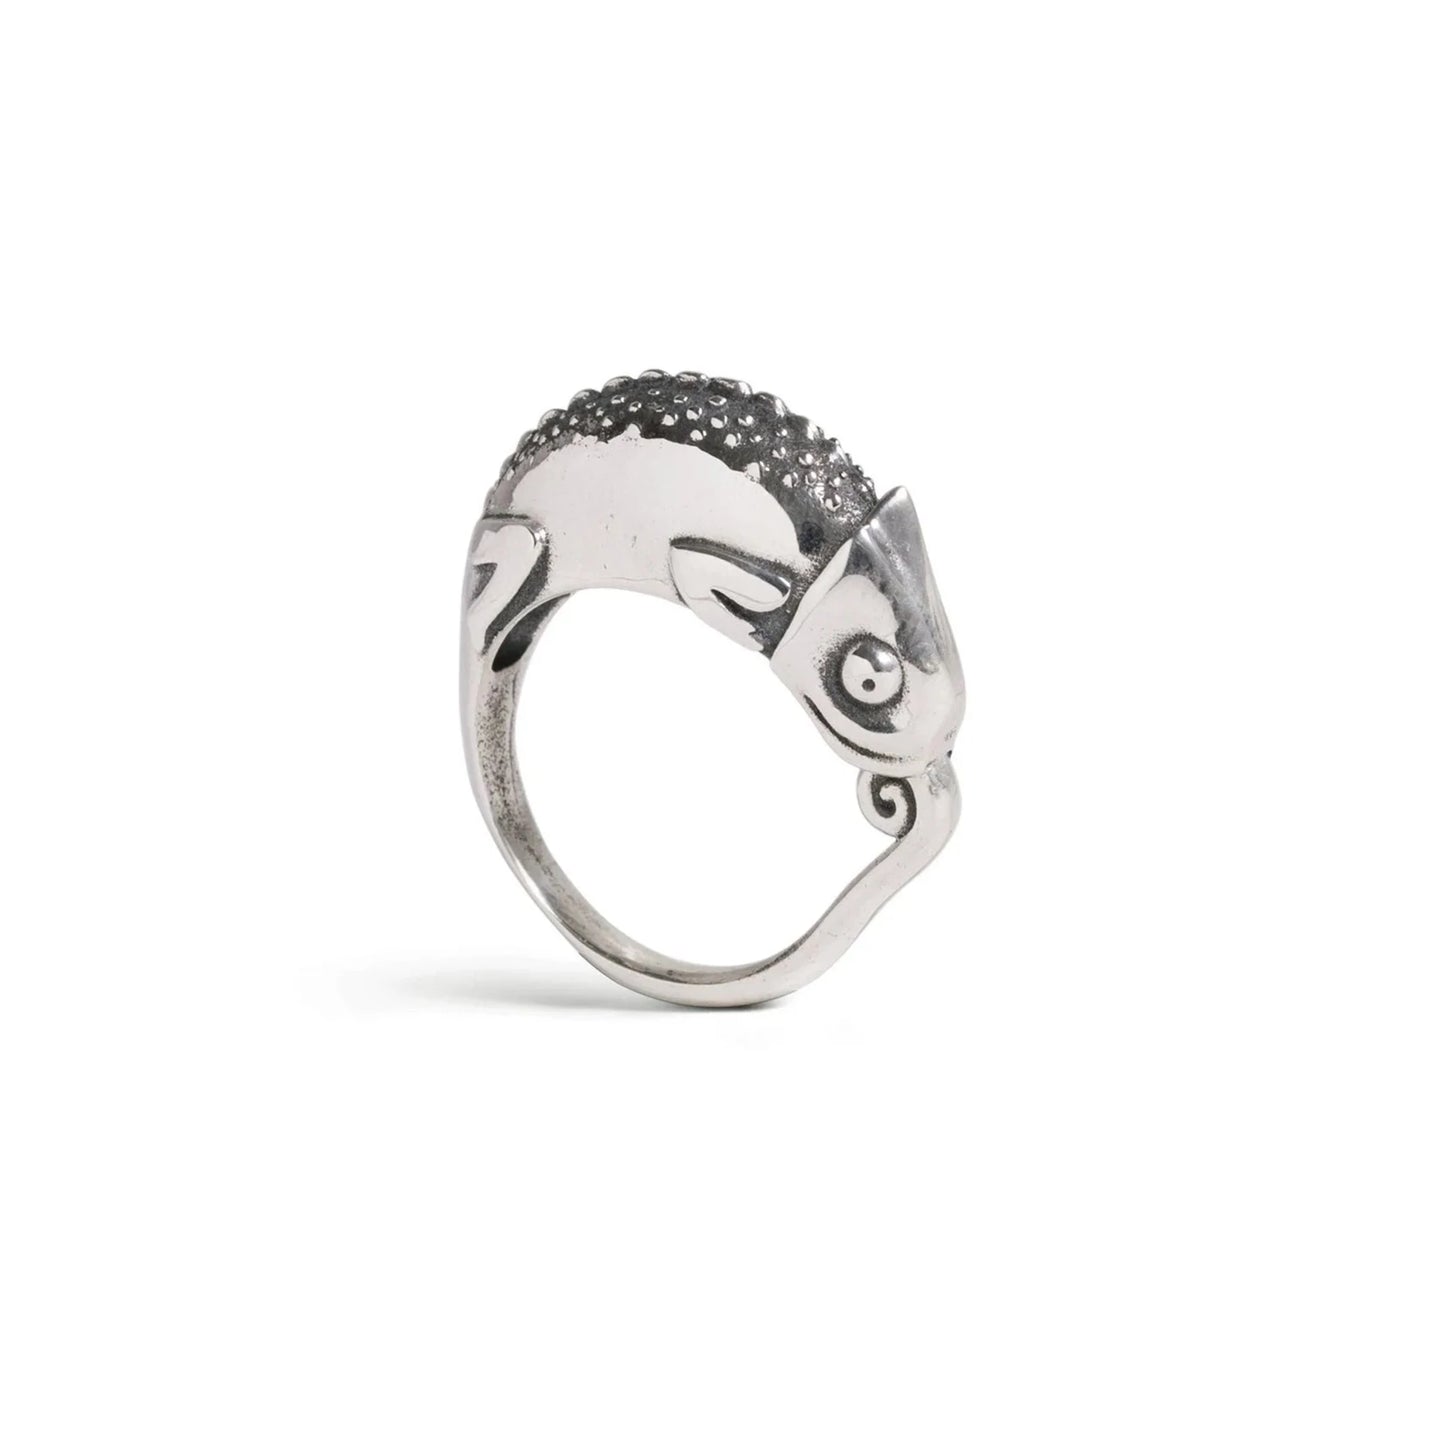 Chameleon Ring from Katmeleon Jewellery